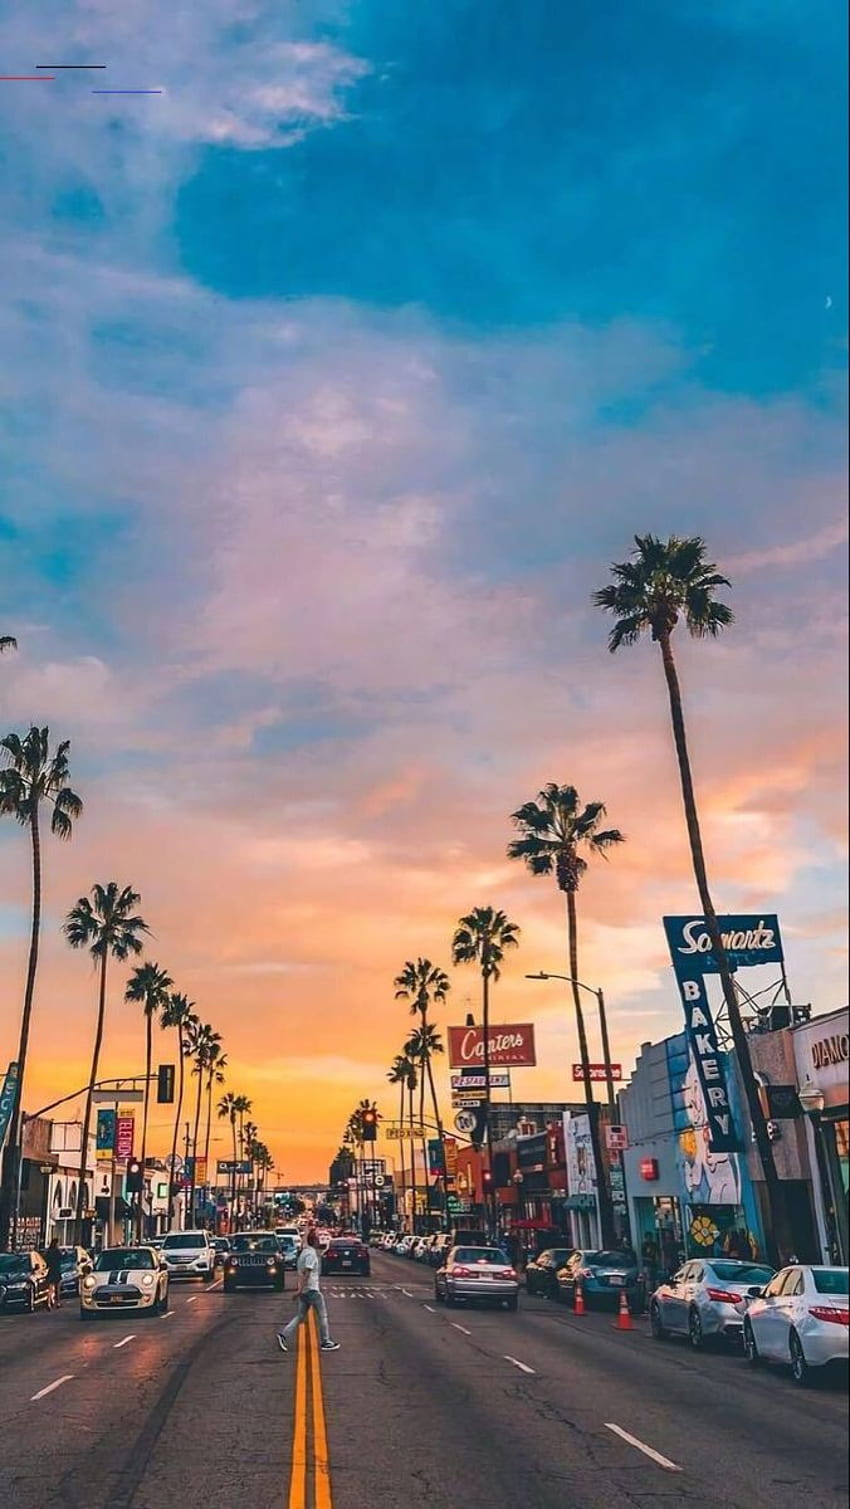 Mùa hè Los Angeles: Mùa hè Los Angeles là thời gian thích hợp để bạn thư giãn và tận hưởng những hoạt động ngoài trời sôi động, như tắm biển, dạo phố và tham quan các điểm đến du lịch hấp dẫn. Hình ảnh sẽ giúp bạn cảm nhận được vẻ đẹp của mùa hè Los Angeles và tìm kiếm những hoạt động phù hợp với mình.